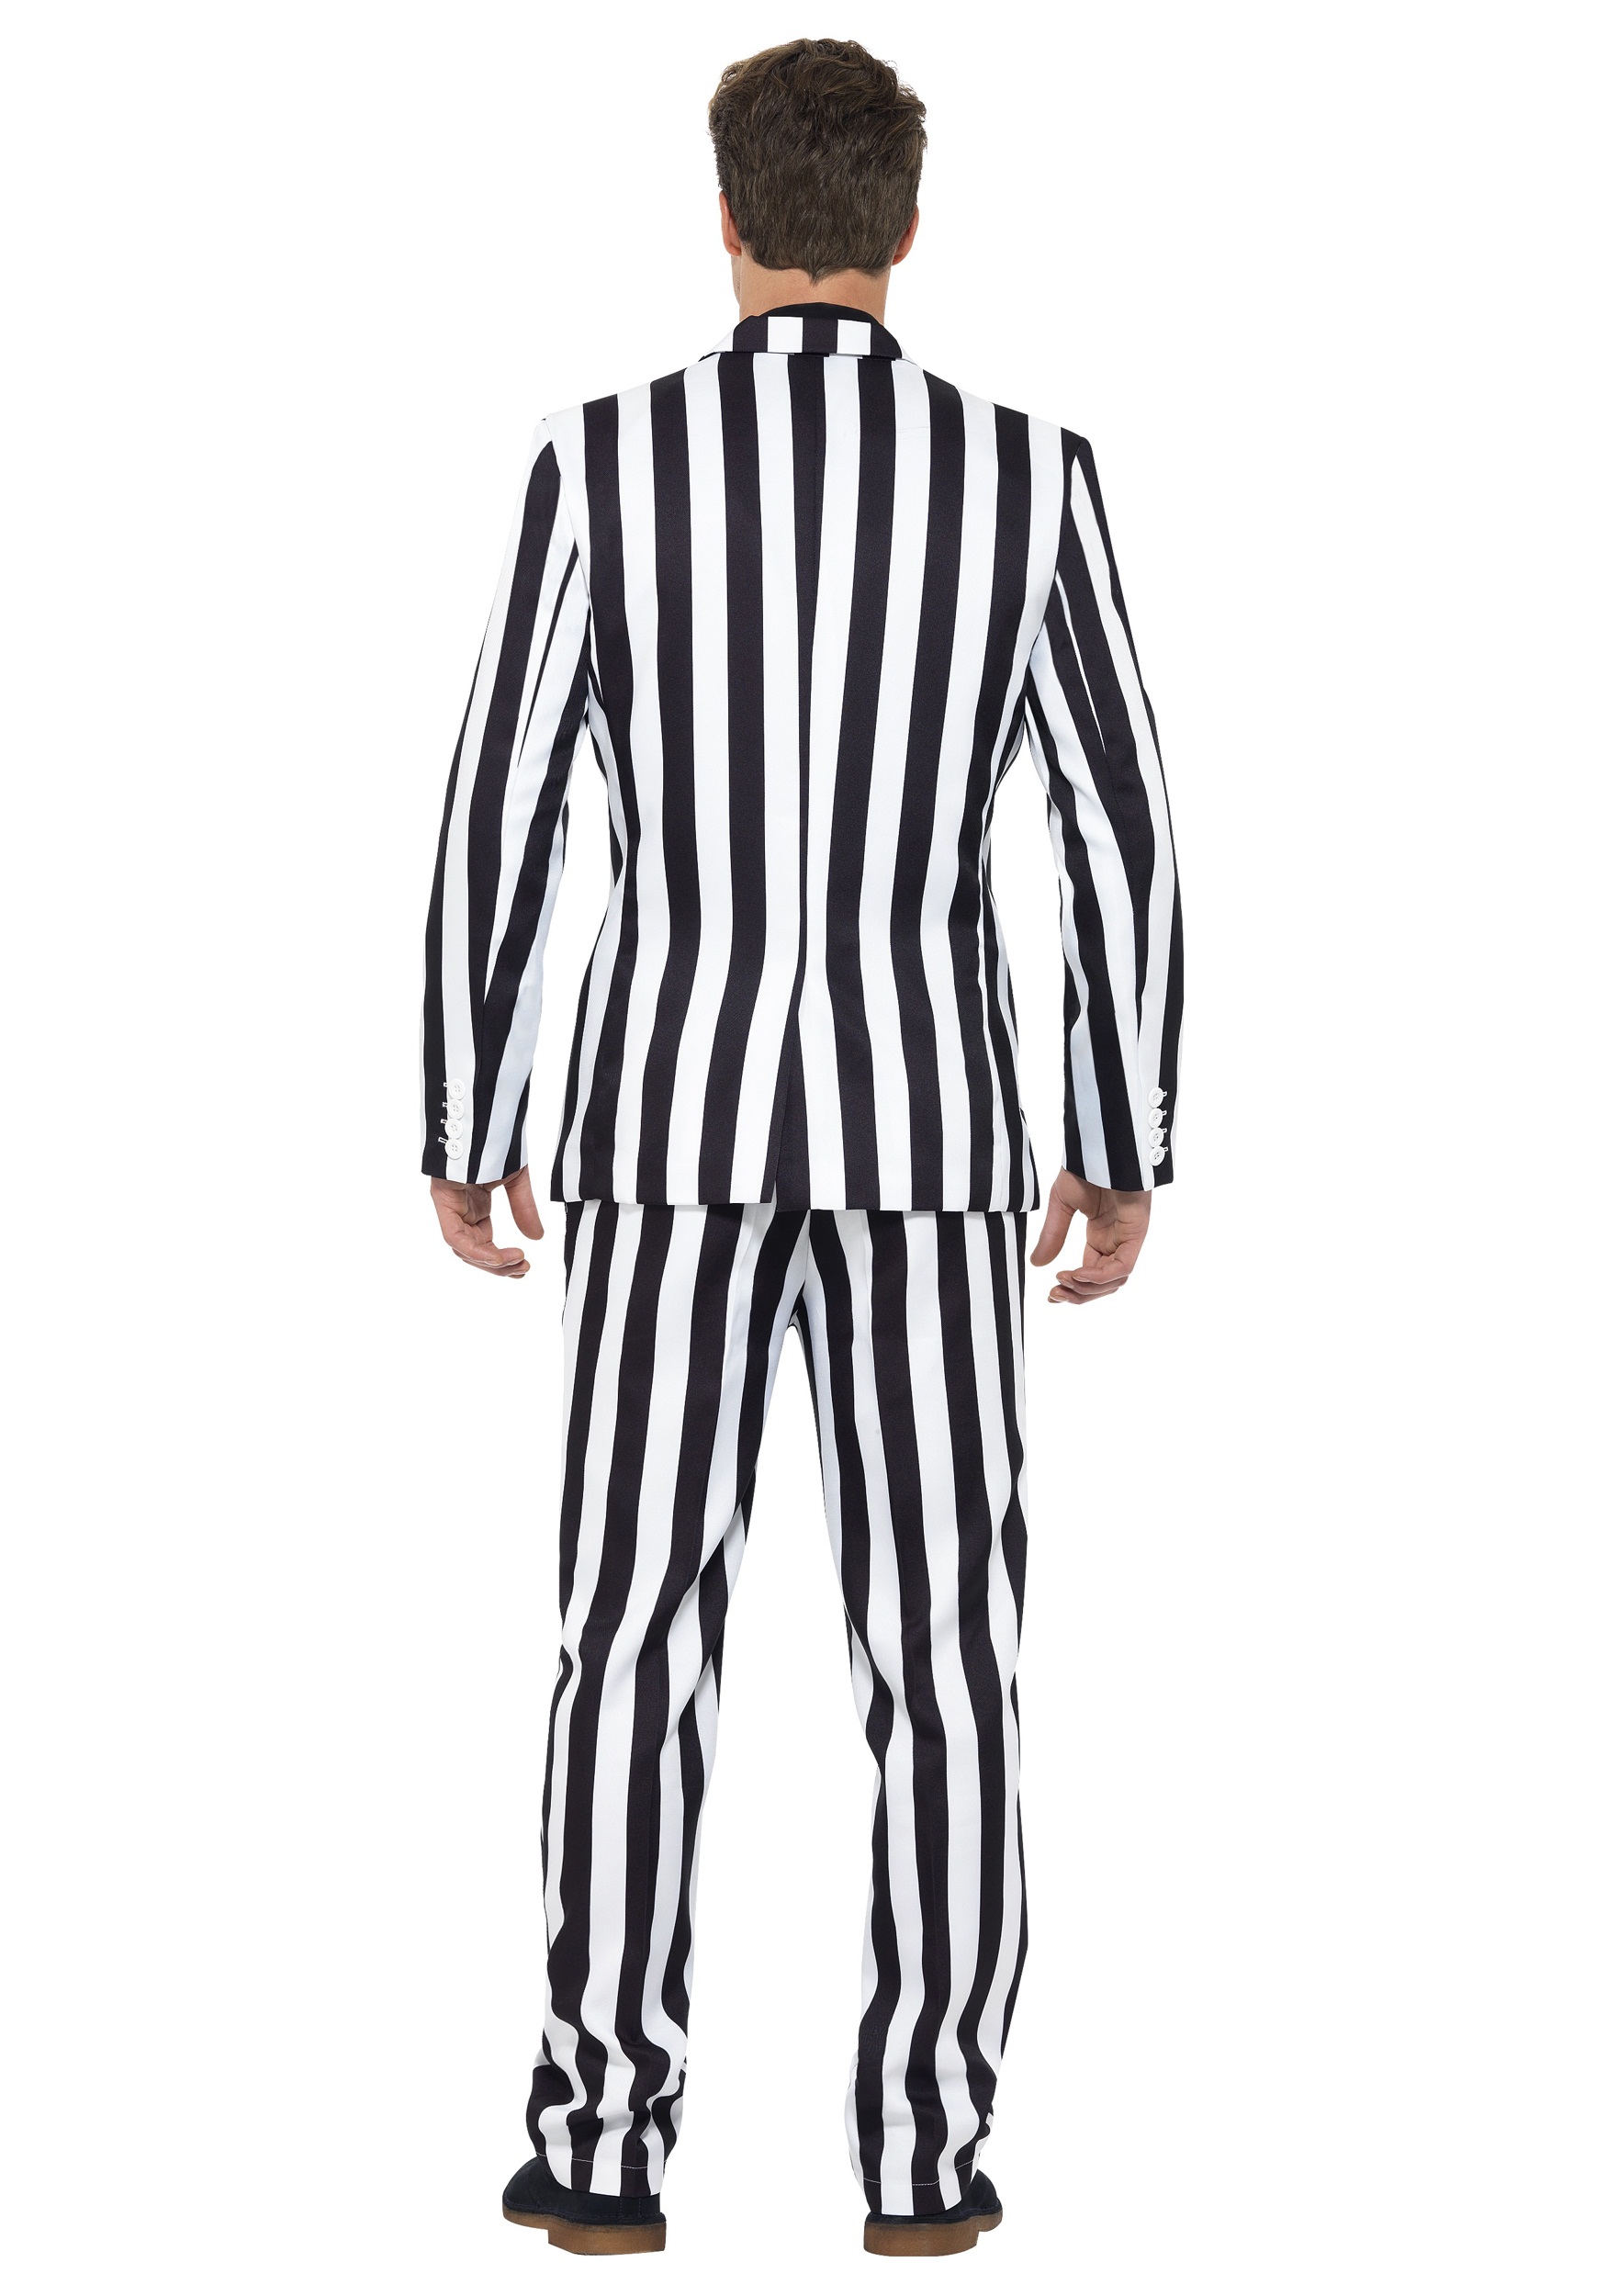 Men's Humbug Striped Suit